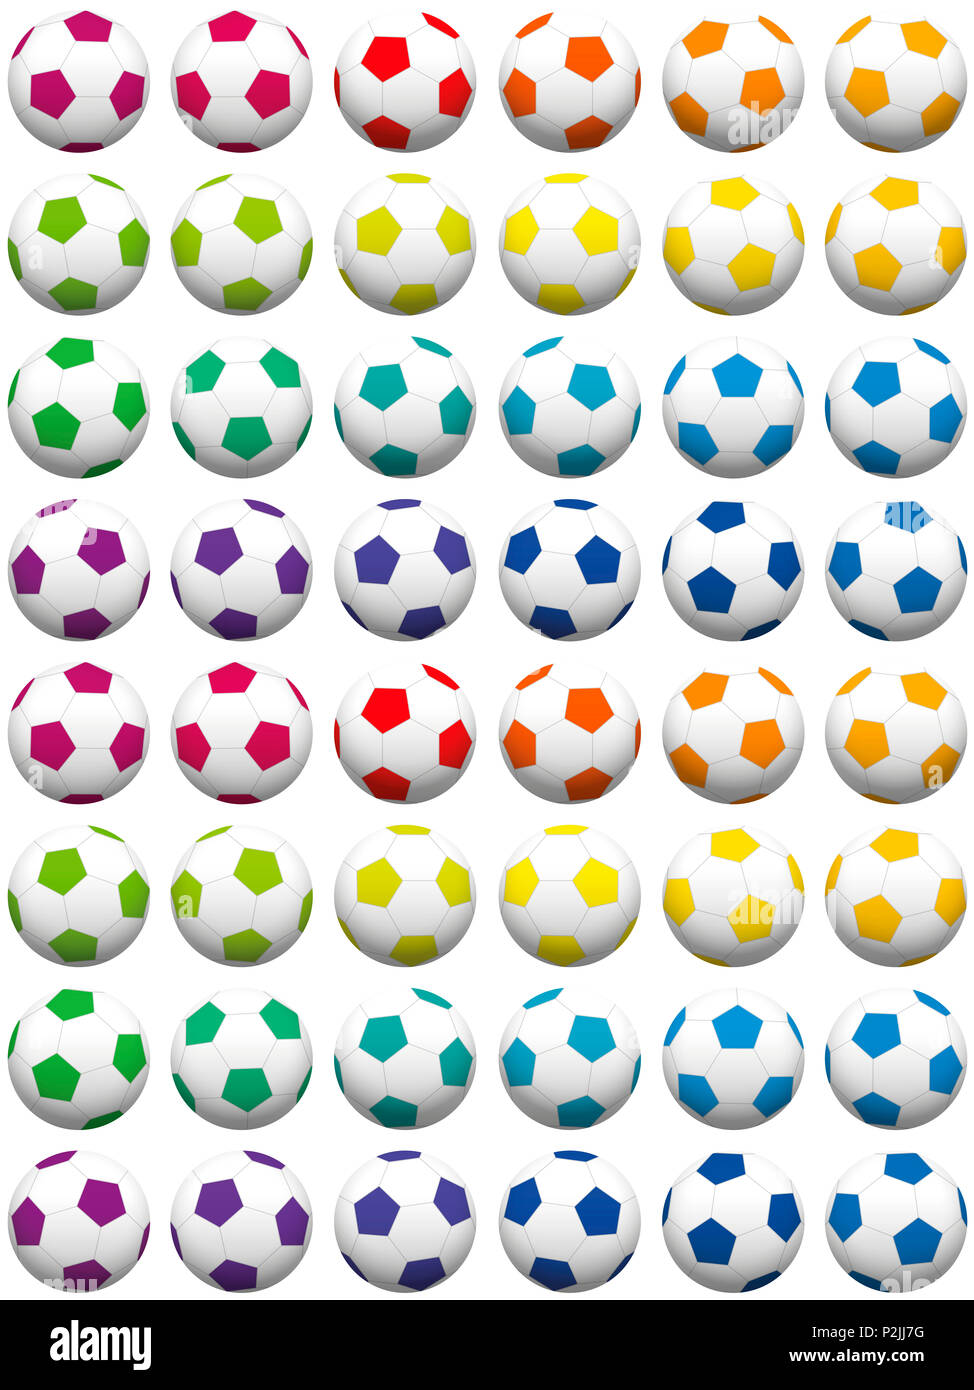 Ballon de soccer en couleur de fond, correctement triés - illustration sur fond blanc. Banque D'Images